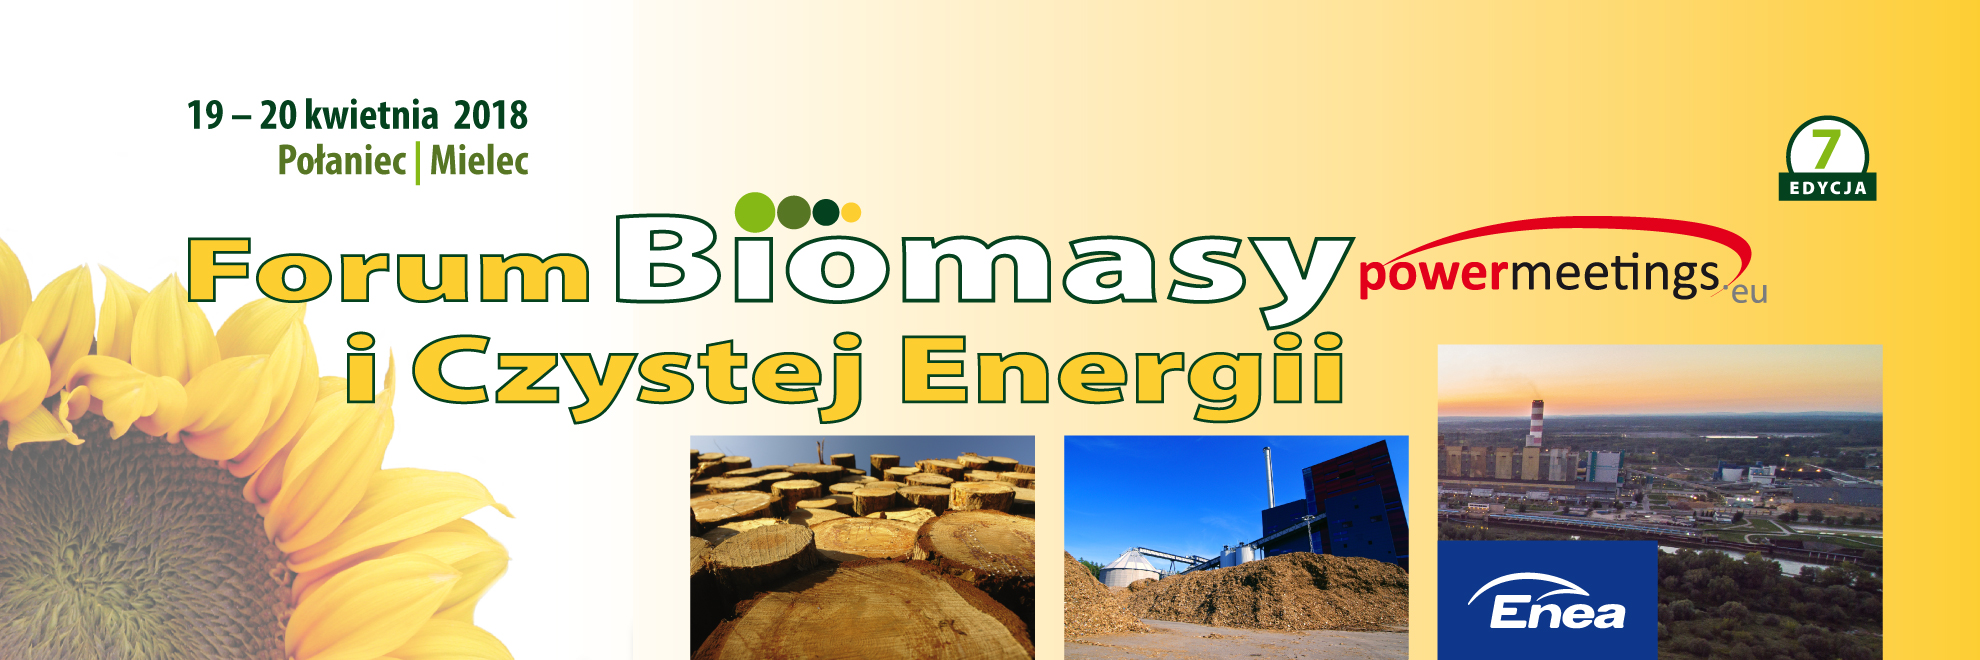 VII edycja Forum Biomasy powermeetings.eu już w kwietniu!